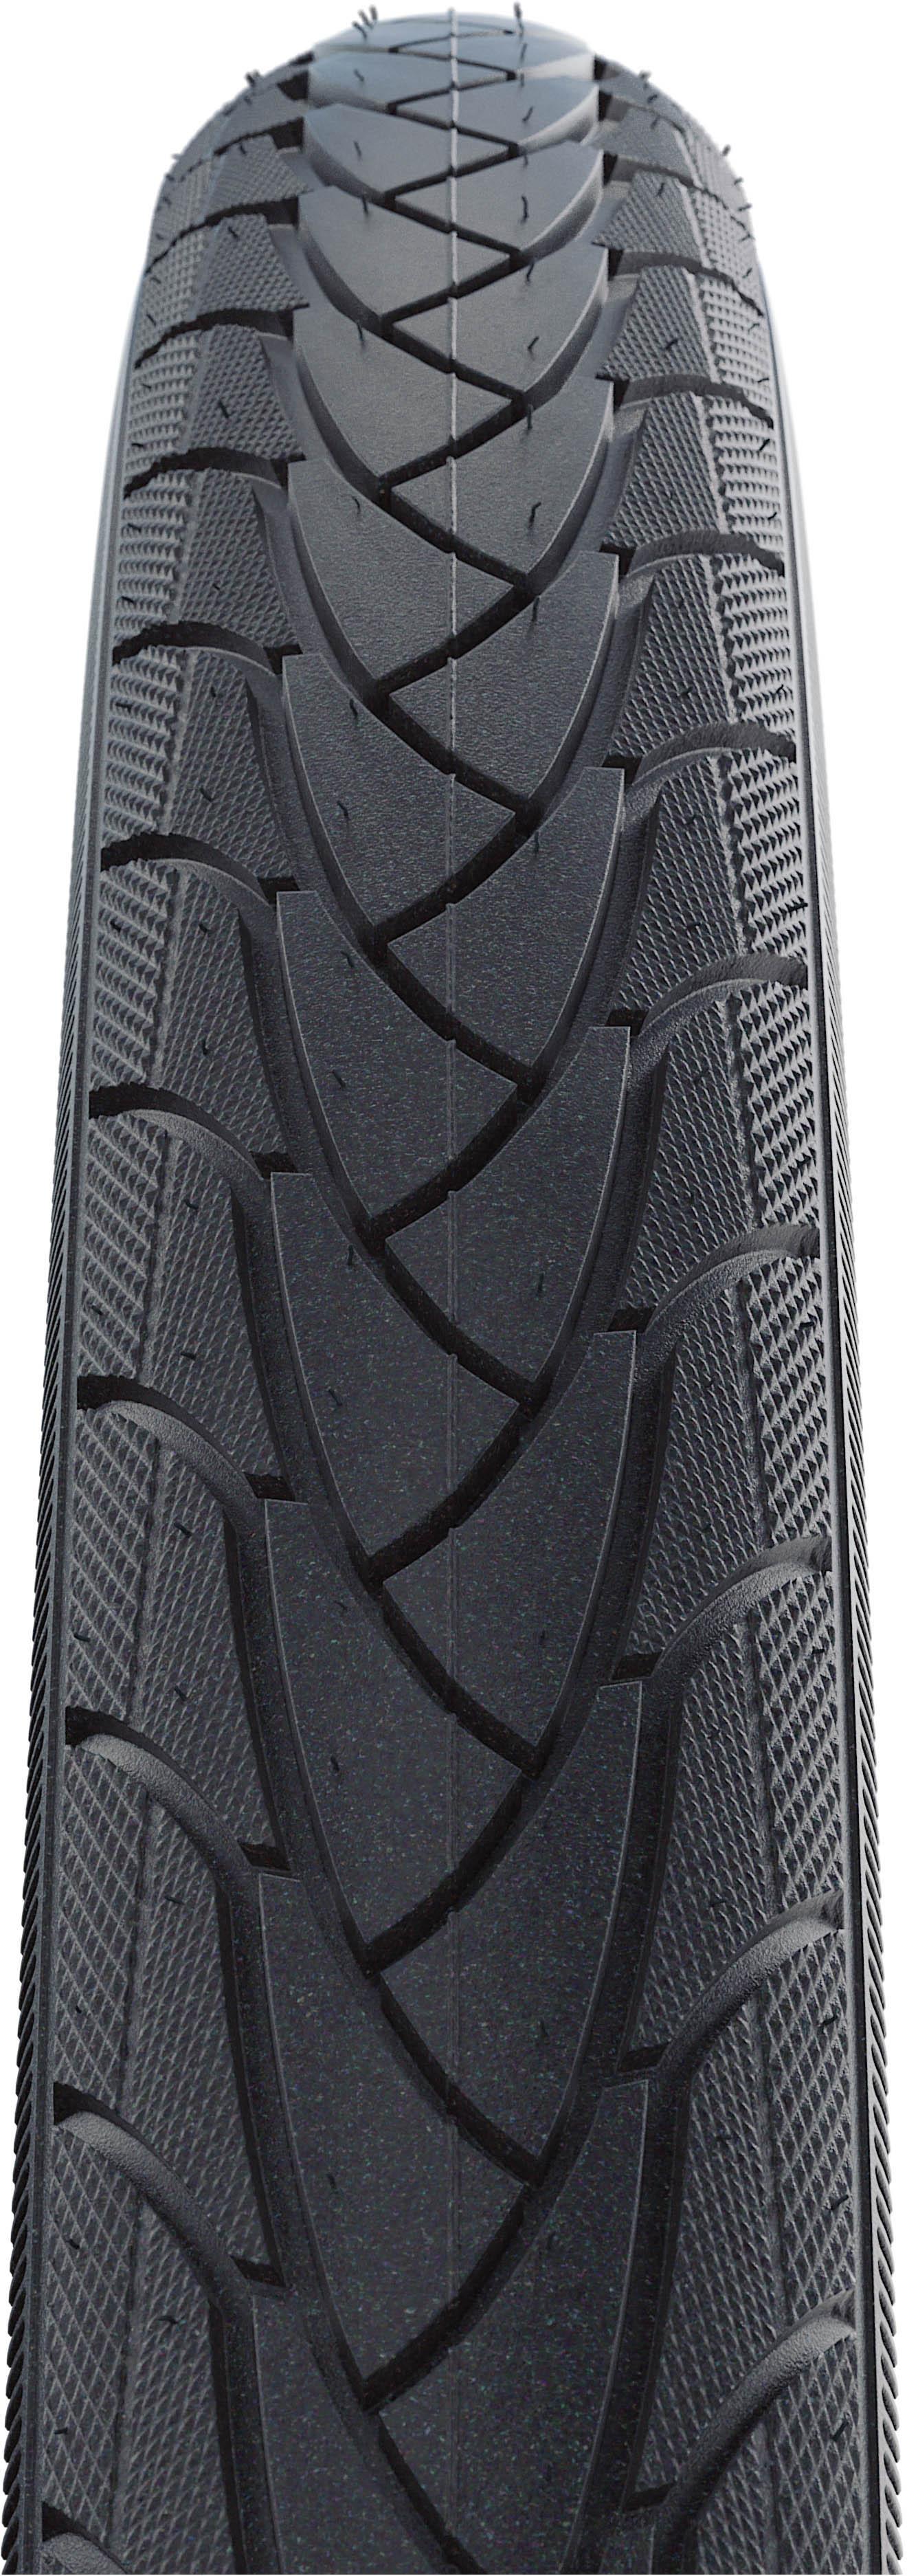 700x35c tyres